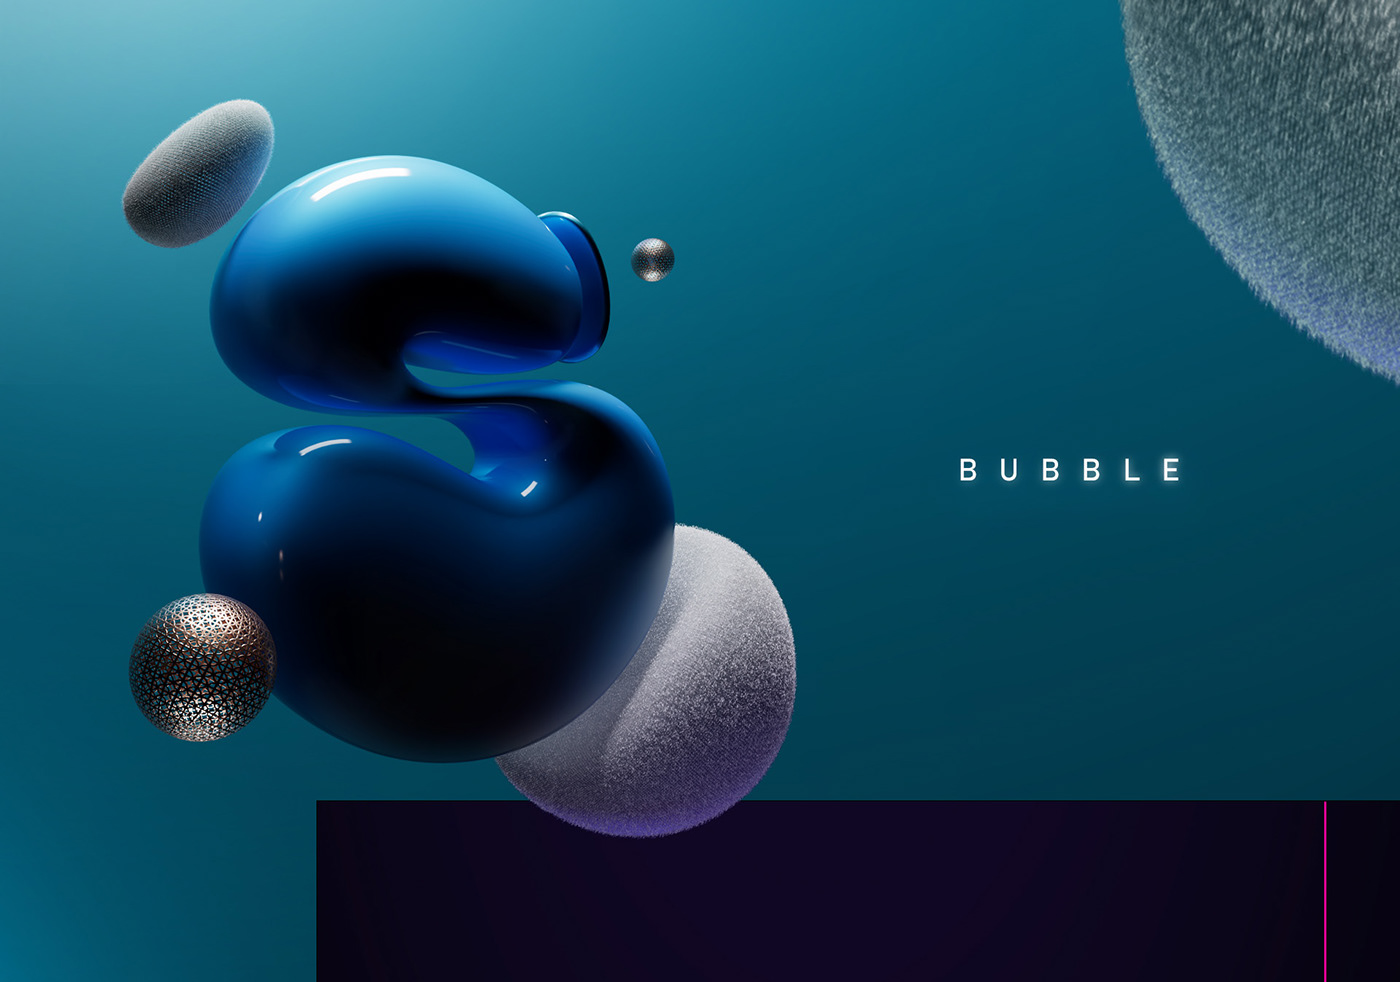 3D bubble style